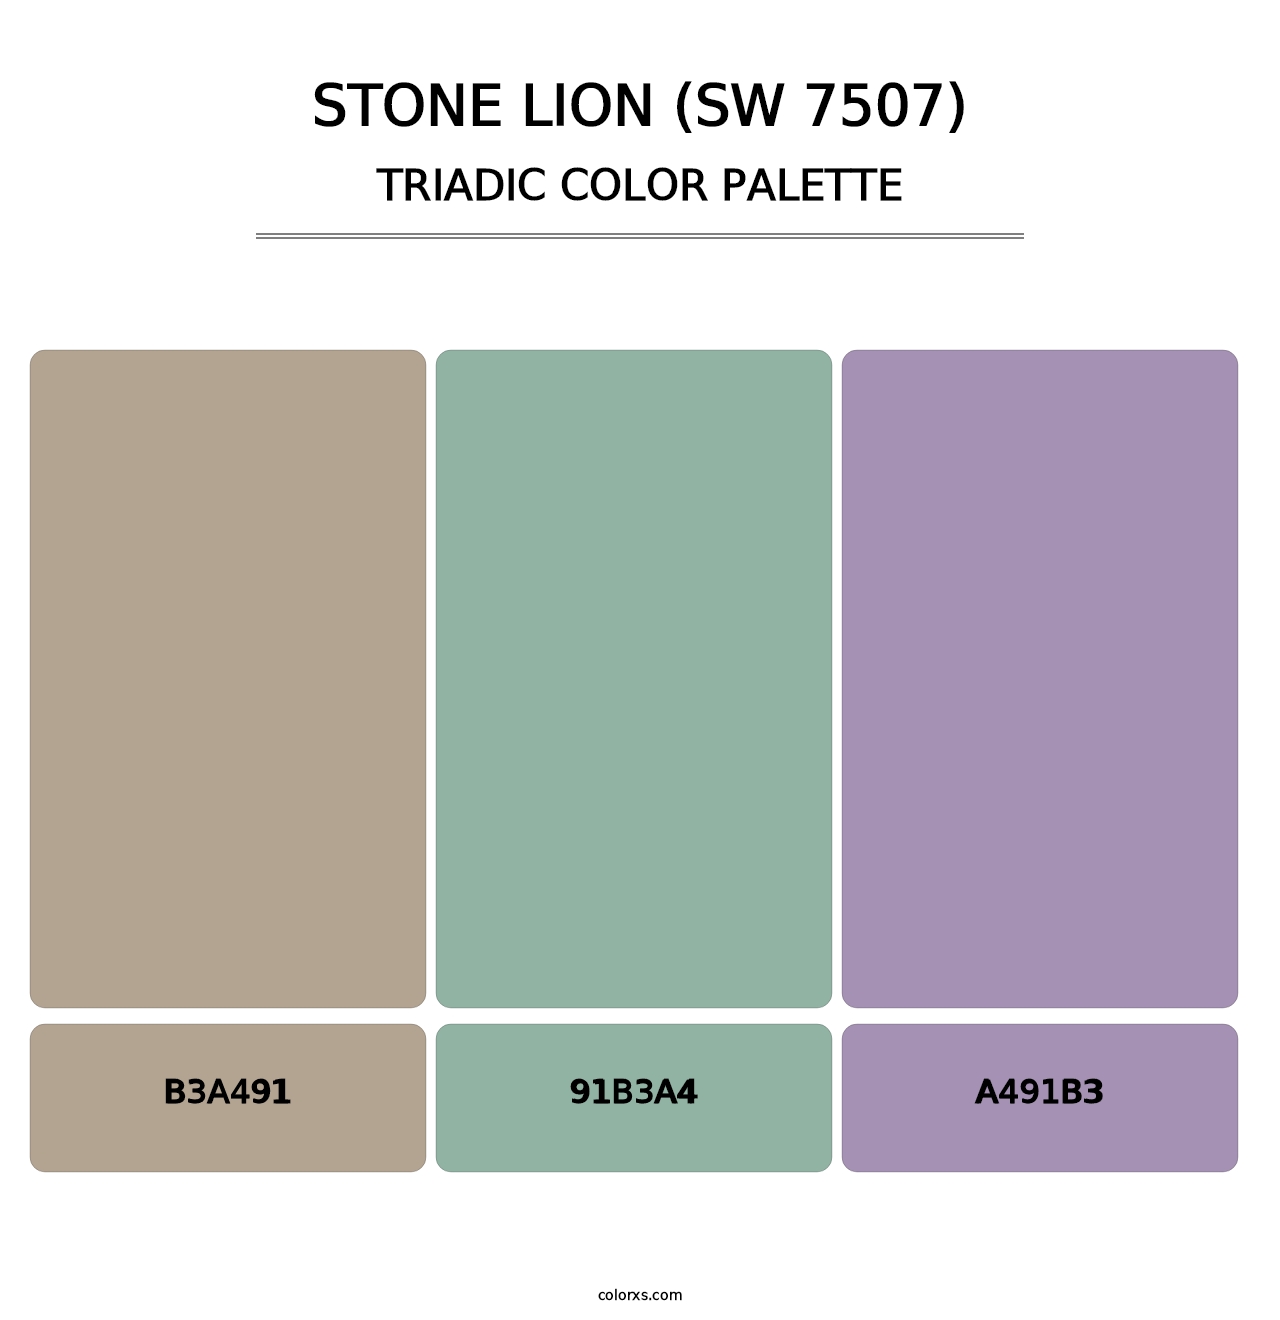 Stone Lion (SW 7507) - Triadic Color Palette